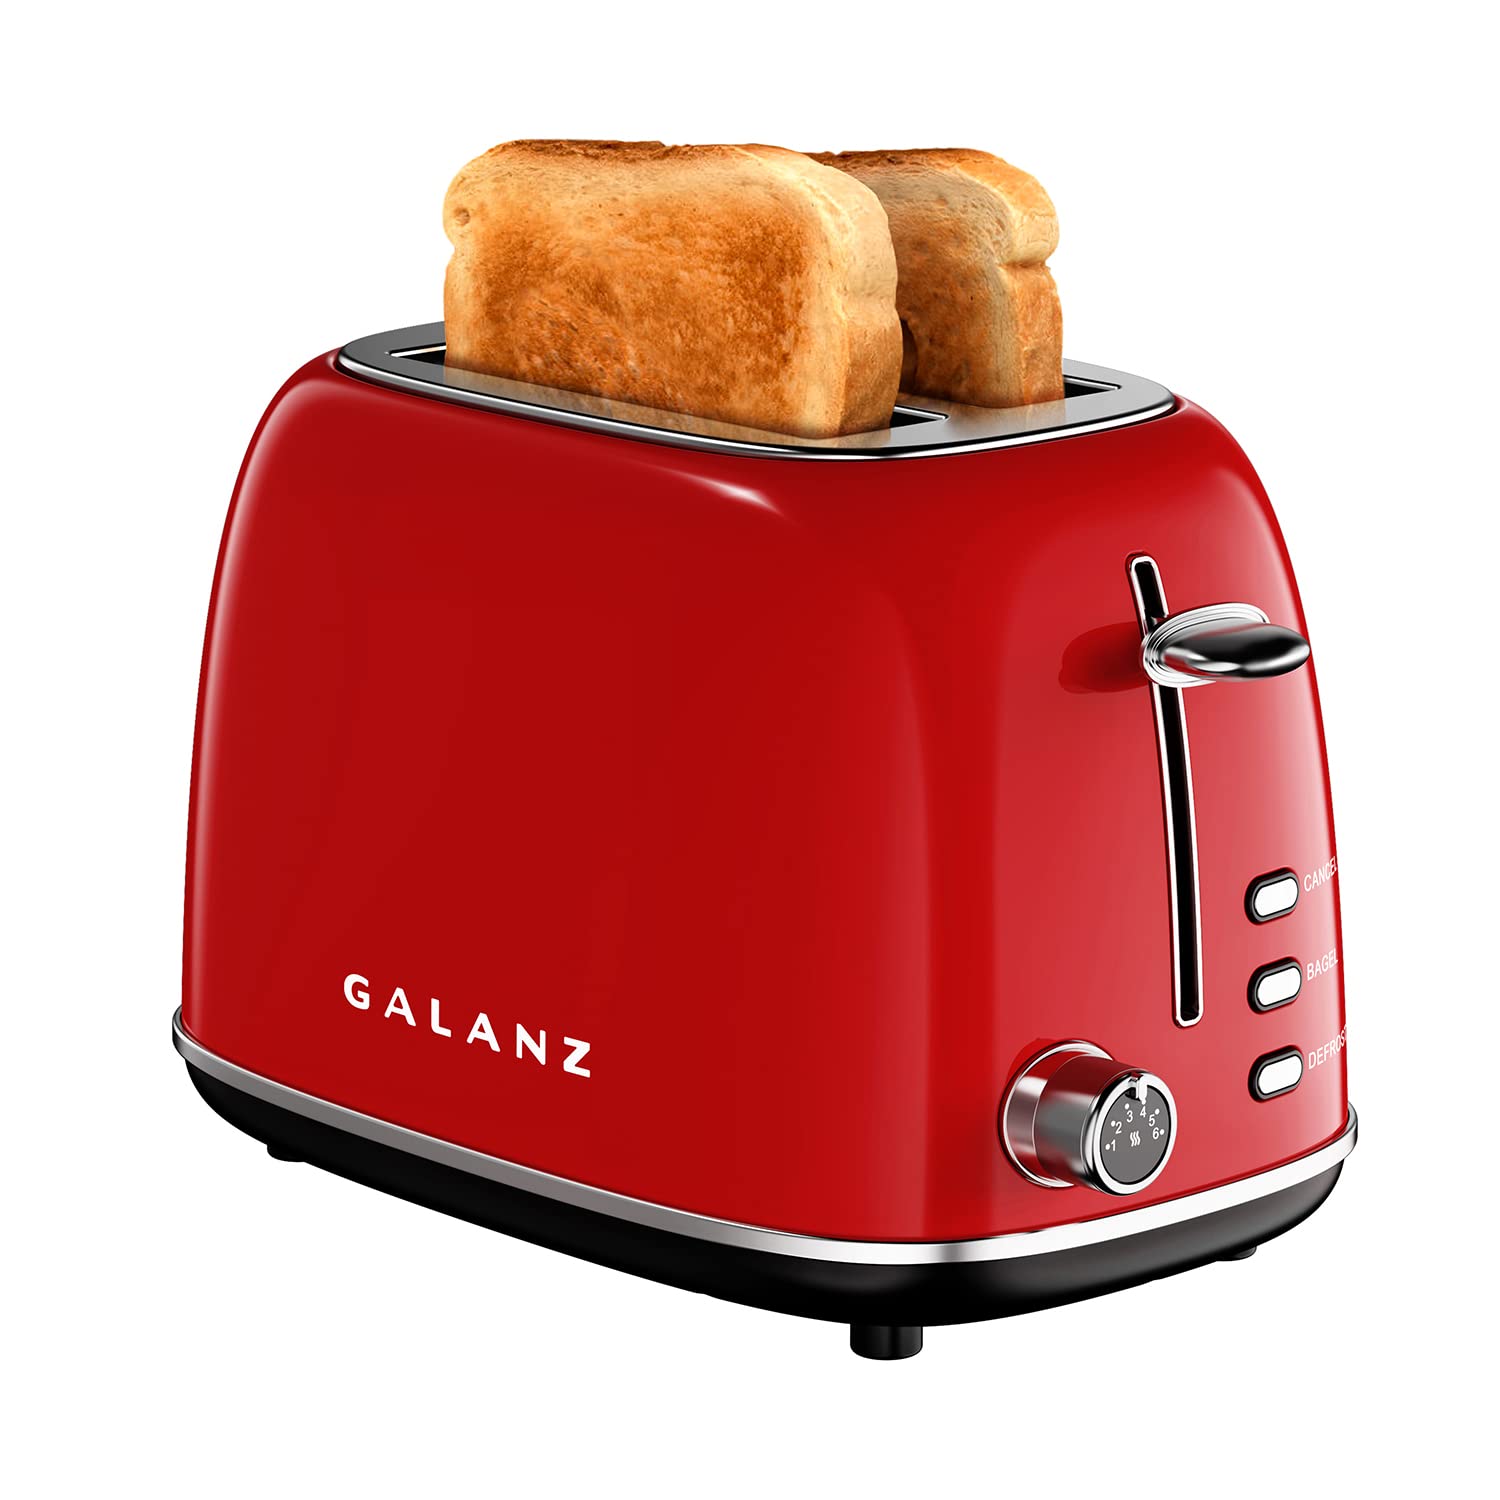 Galanz GLR12TRDEFR Refrigerator, Retro Red, 12.0 Cu Ft & 2-Slice Toaster, 1.5